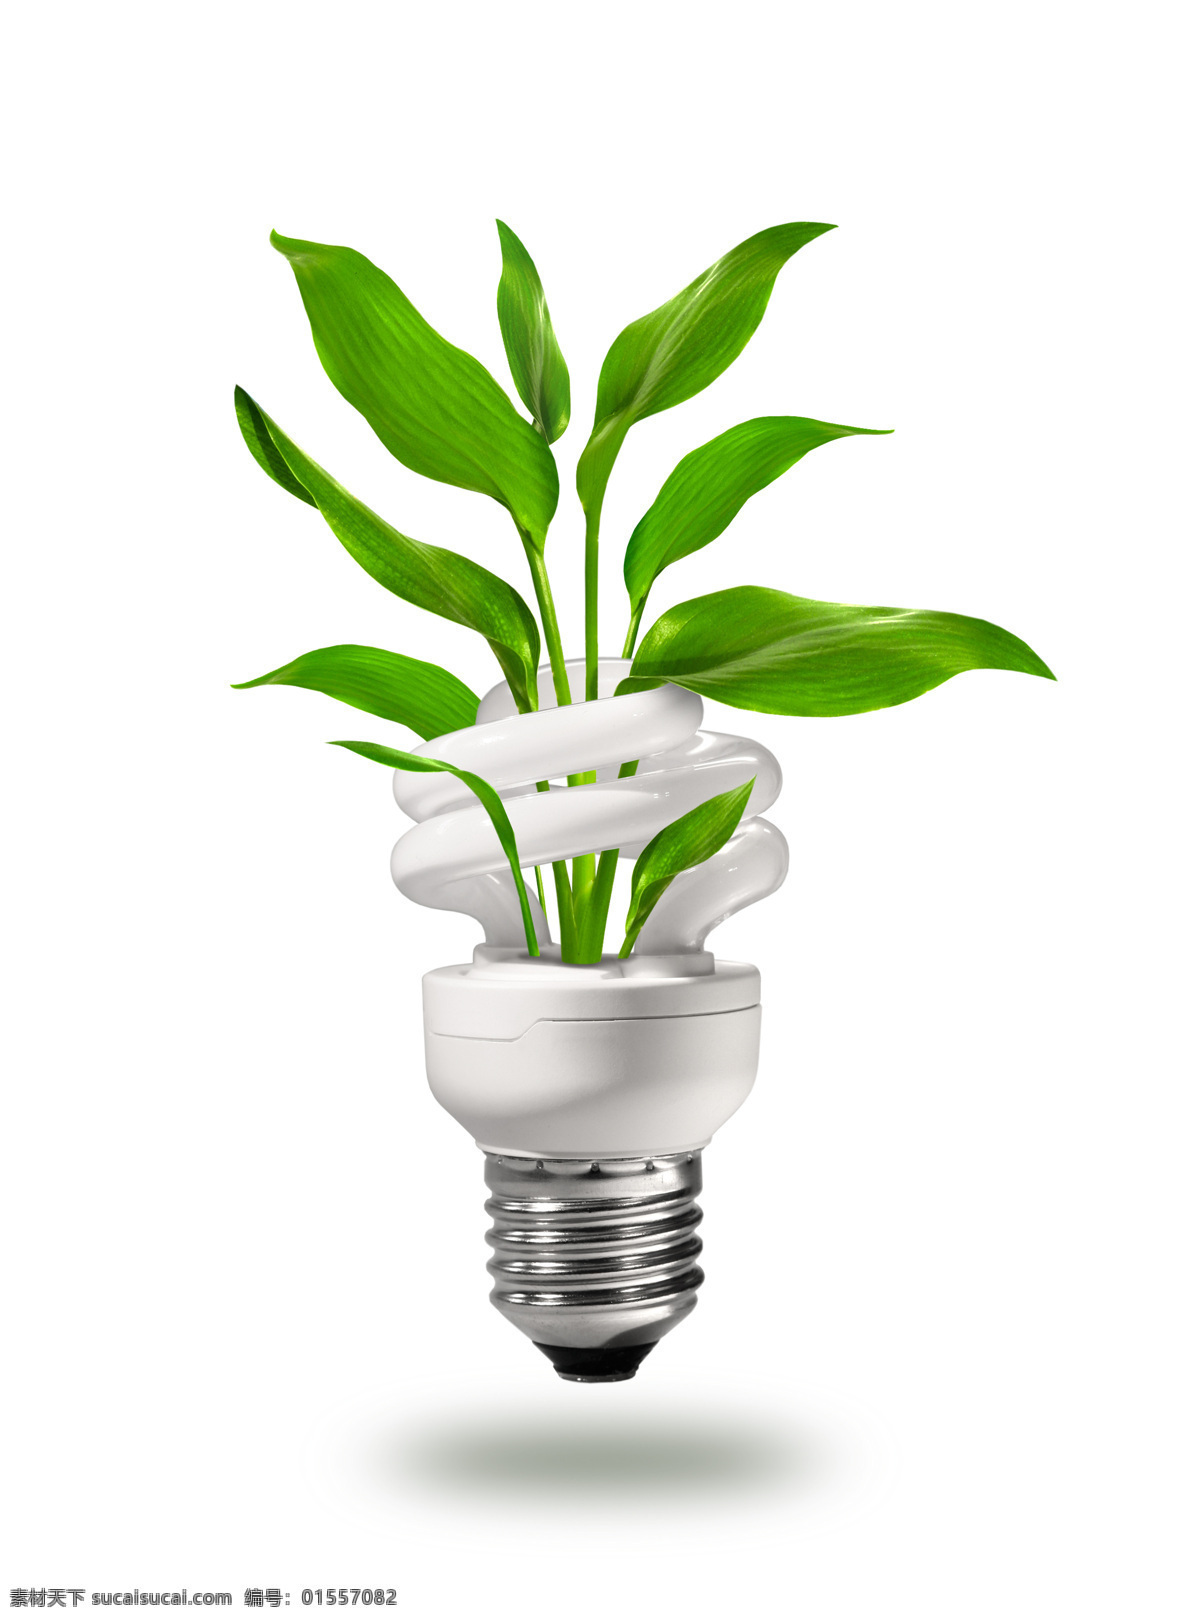 节能灯 里长 出 绿色植物 灯泡 电灯 植物 绿叶植物 创意图片 其他类别 生活百科 白色